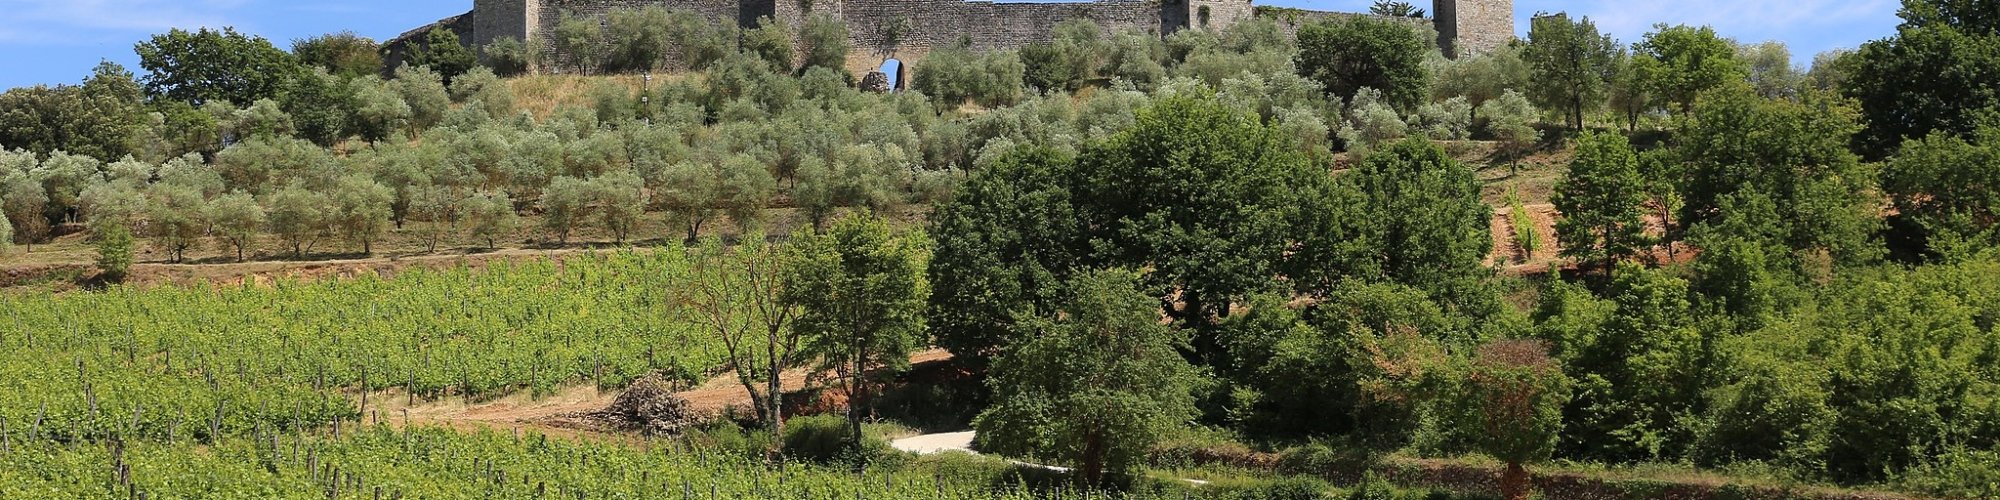 Castello di Monteriggioni sulla Via Francigena Toscana